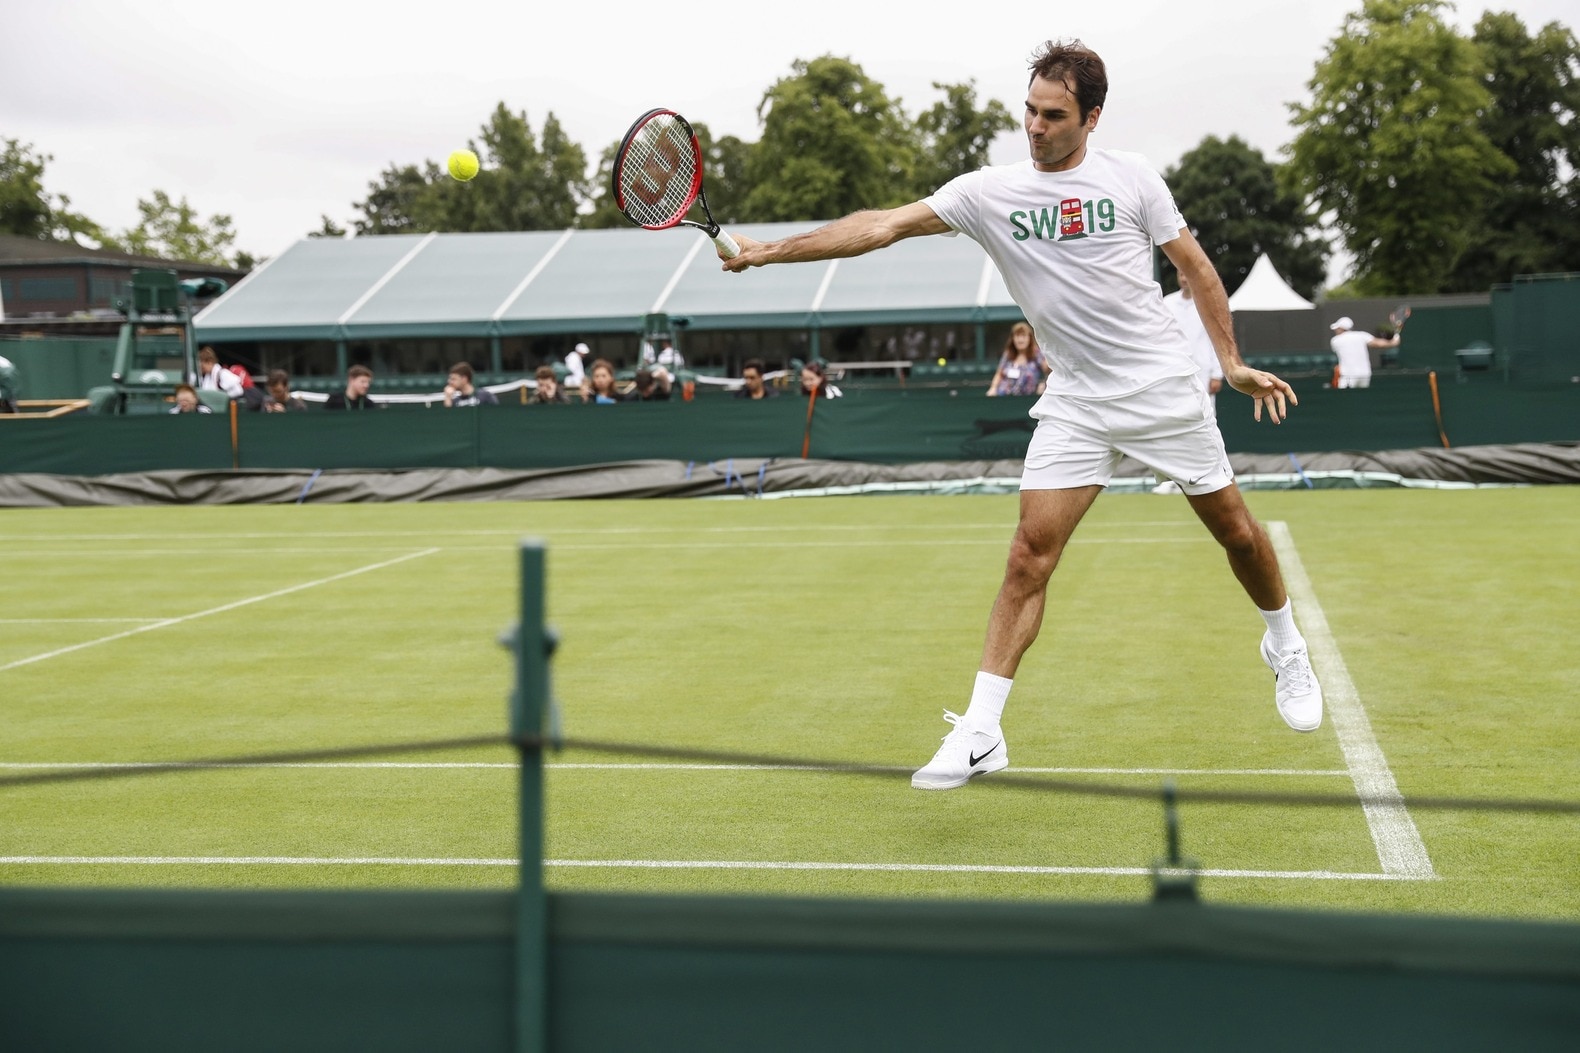 Teruglezen - de rug van Federer en een bizarre beenbreuk in Frankrijk